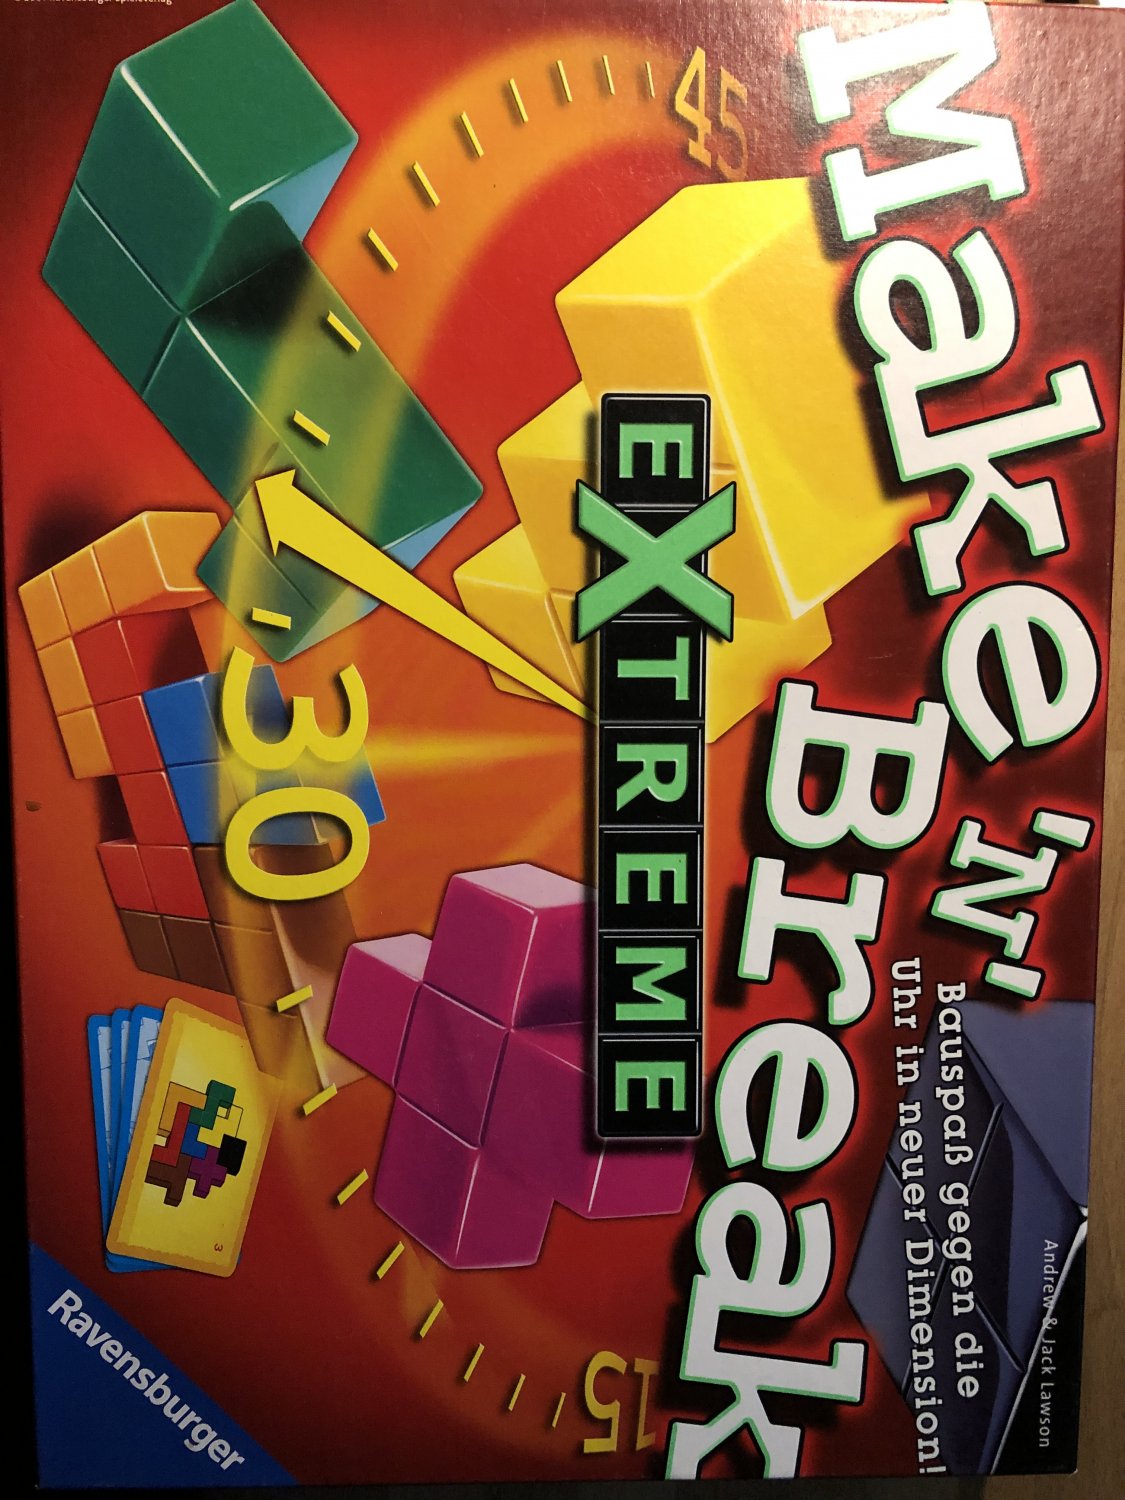 Ravensburger 26432 - Make 'n' Break Extreme “ (Andrew & Jack Lawson) – Spiel  gebraucht kaufen – A02nlGEX41ZZE